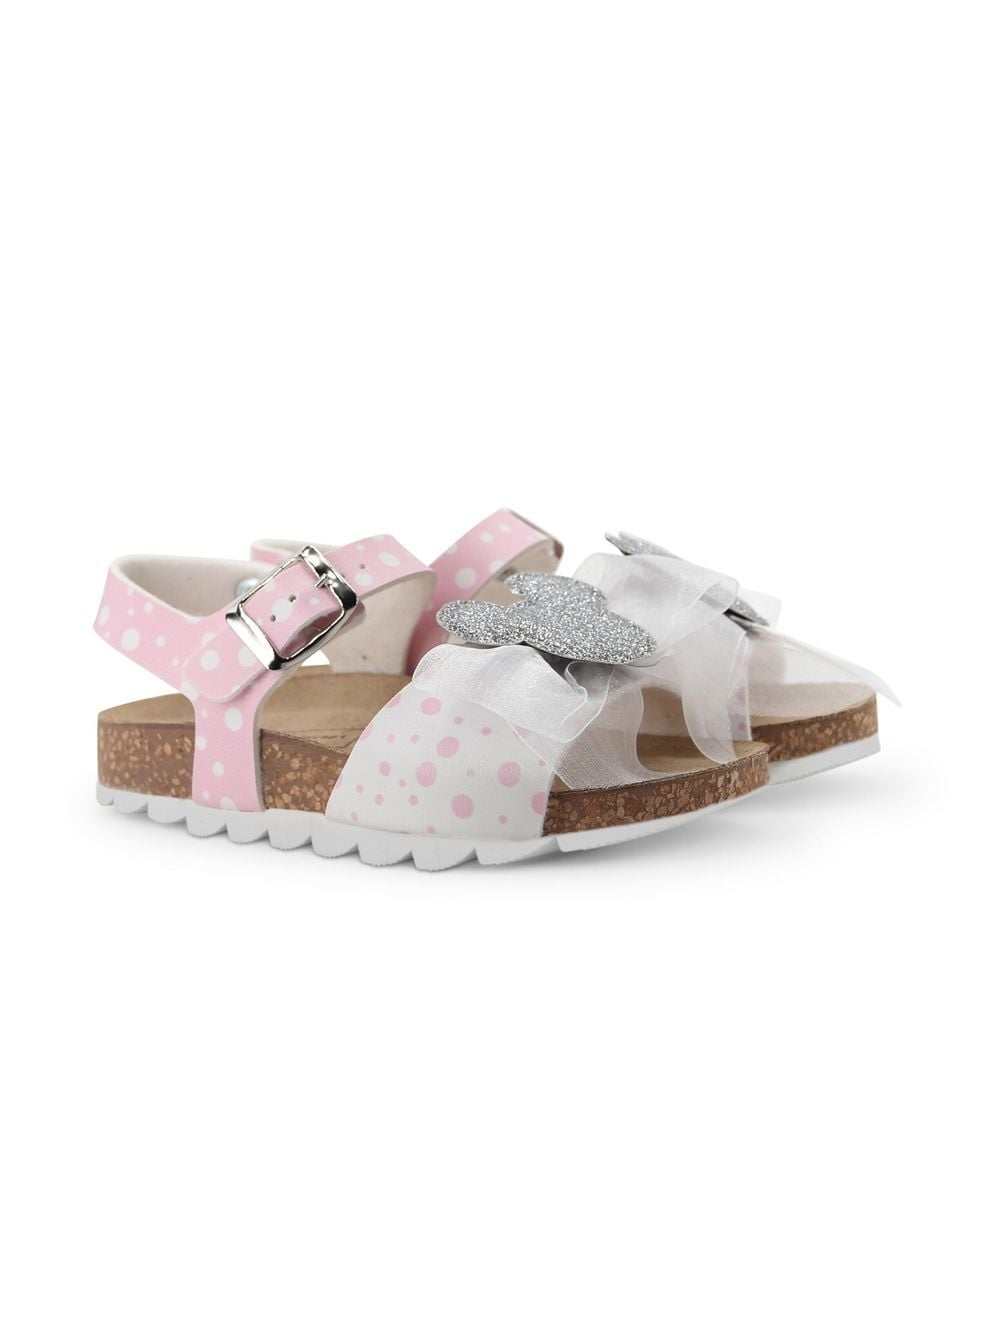 Moa Kids Minnie flat sandals - Pink von Moa Kids